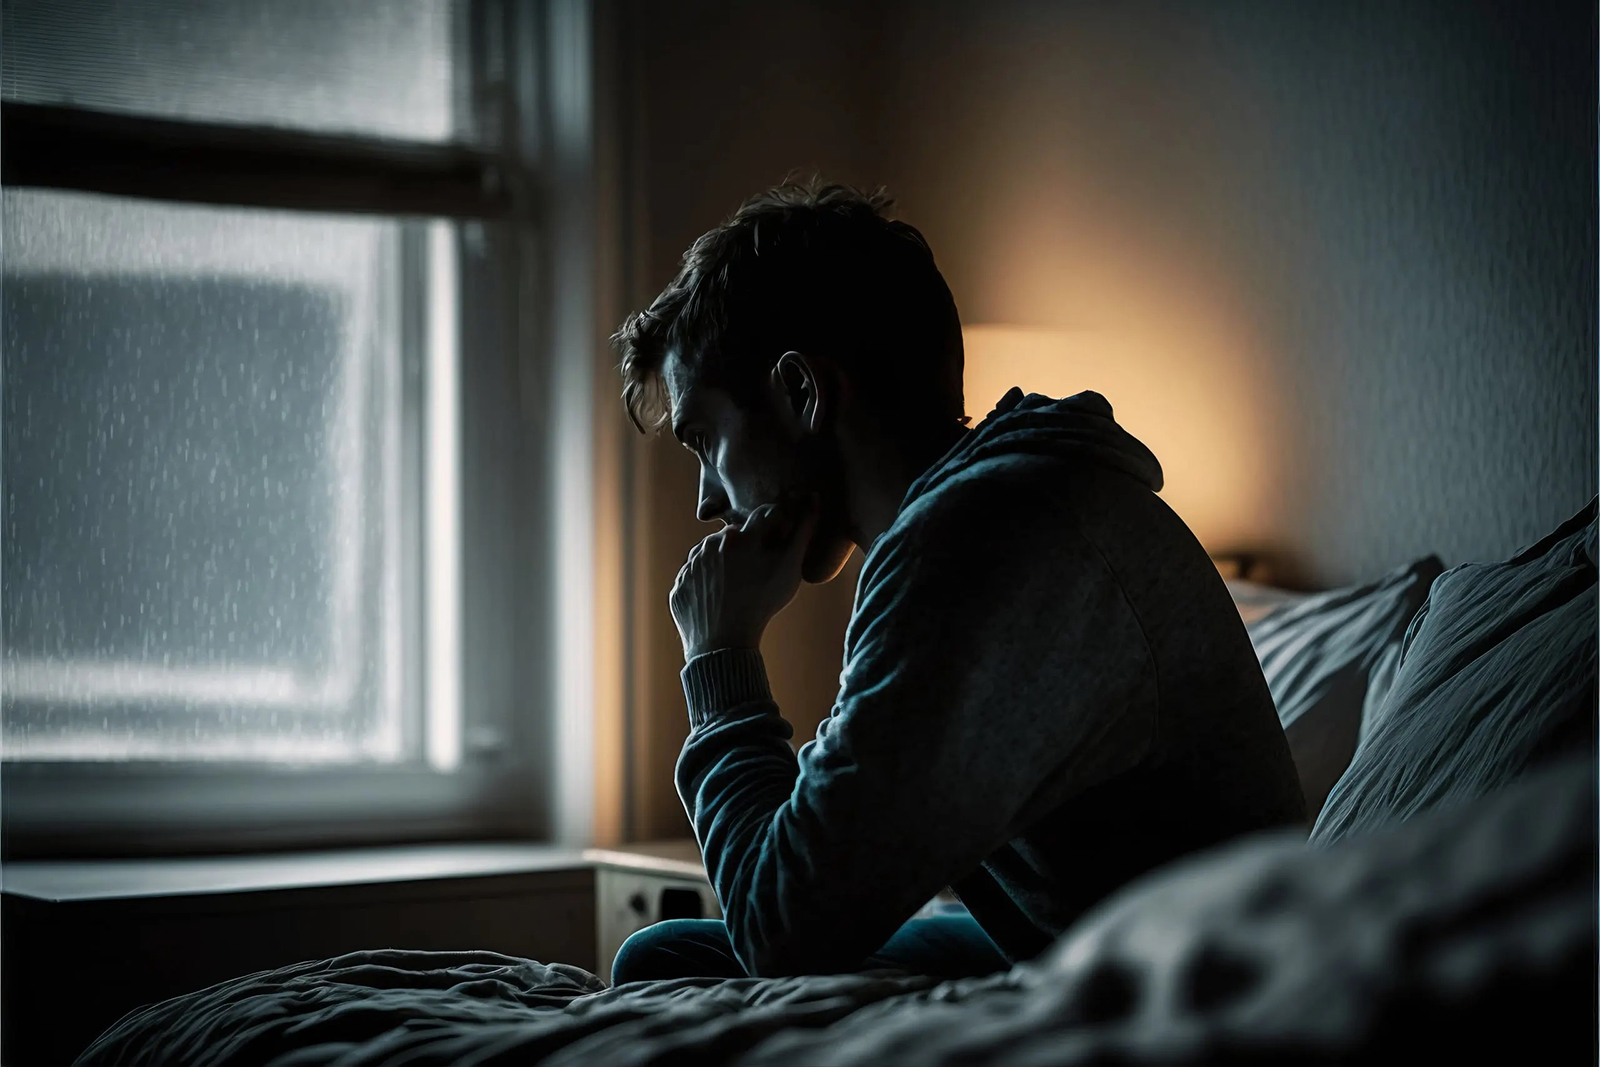 دراسة: الحرمان المؤقت من النوم علاج فعّال للاكتئاب